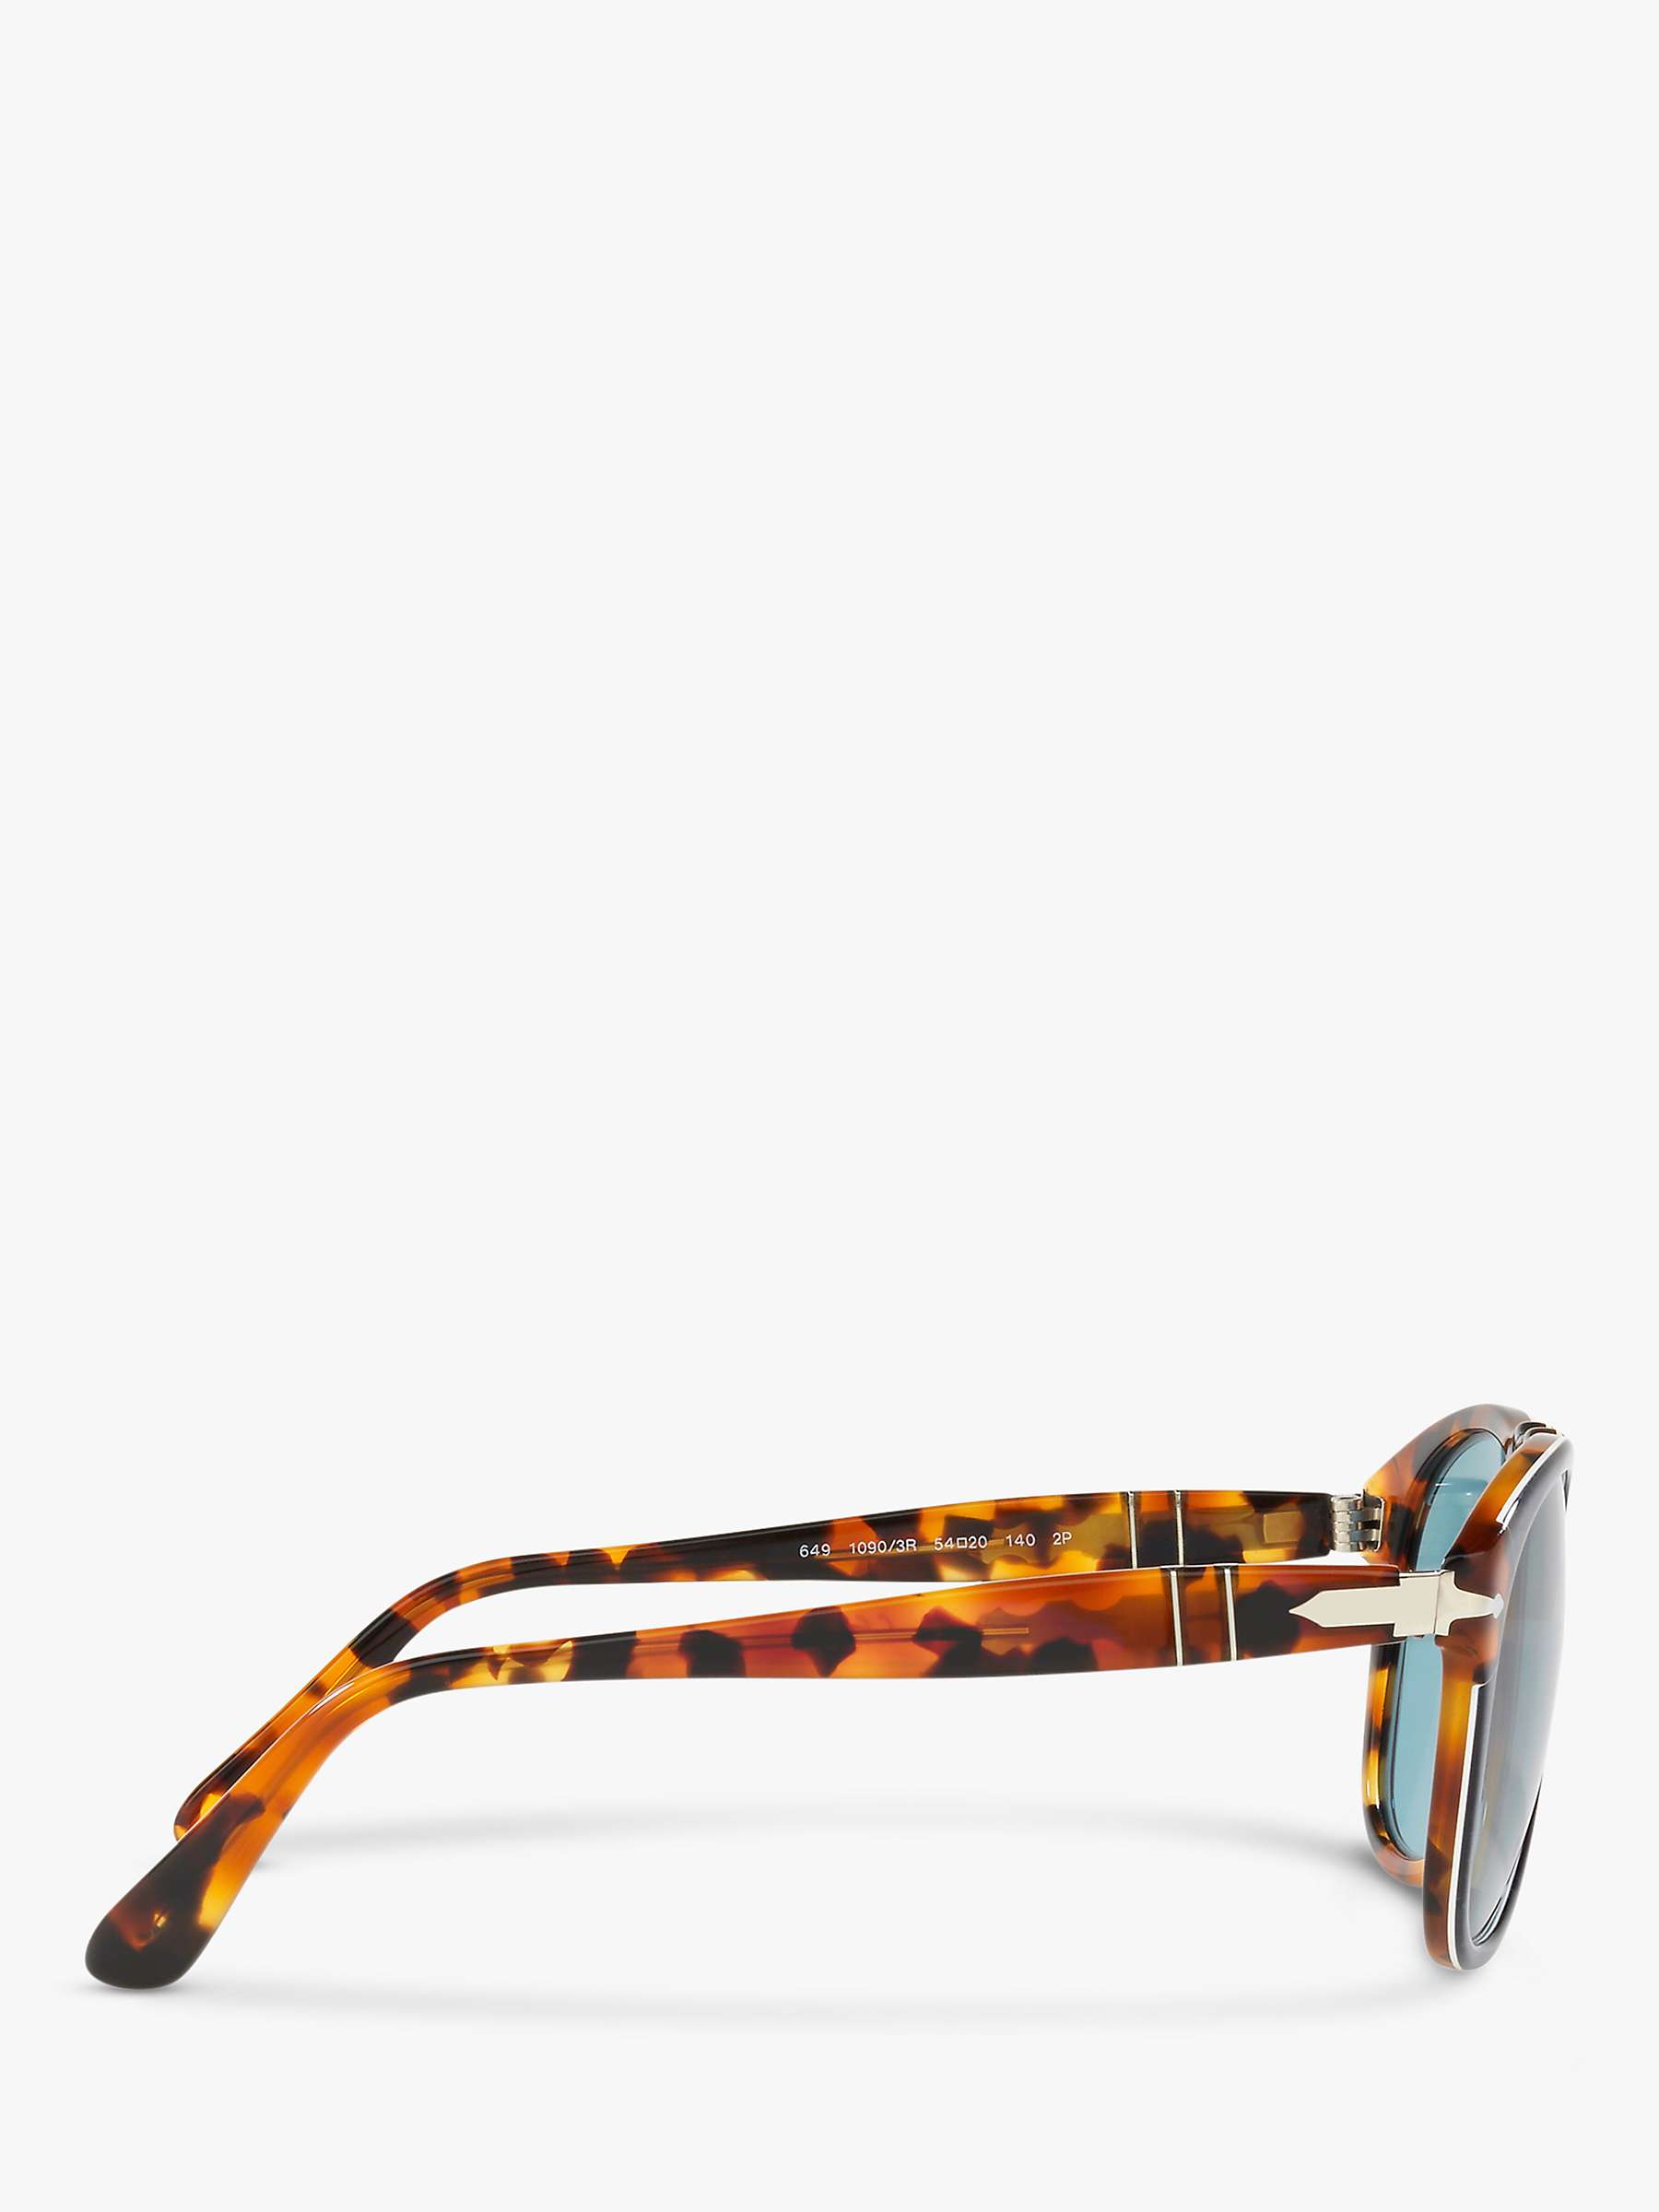 Buy Persol PO6049 Polarised Pilot Sunglasses Online at johnlewis.com